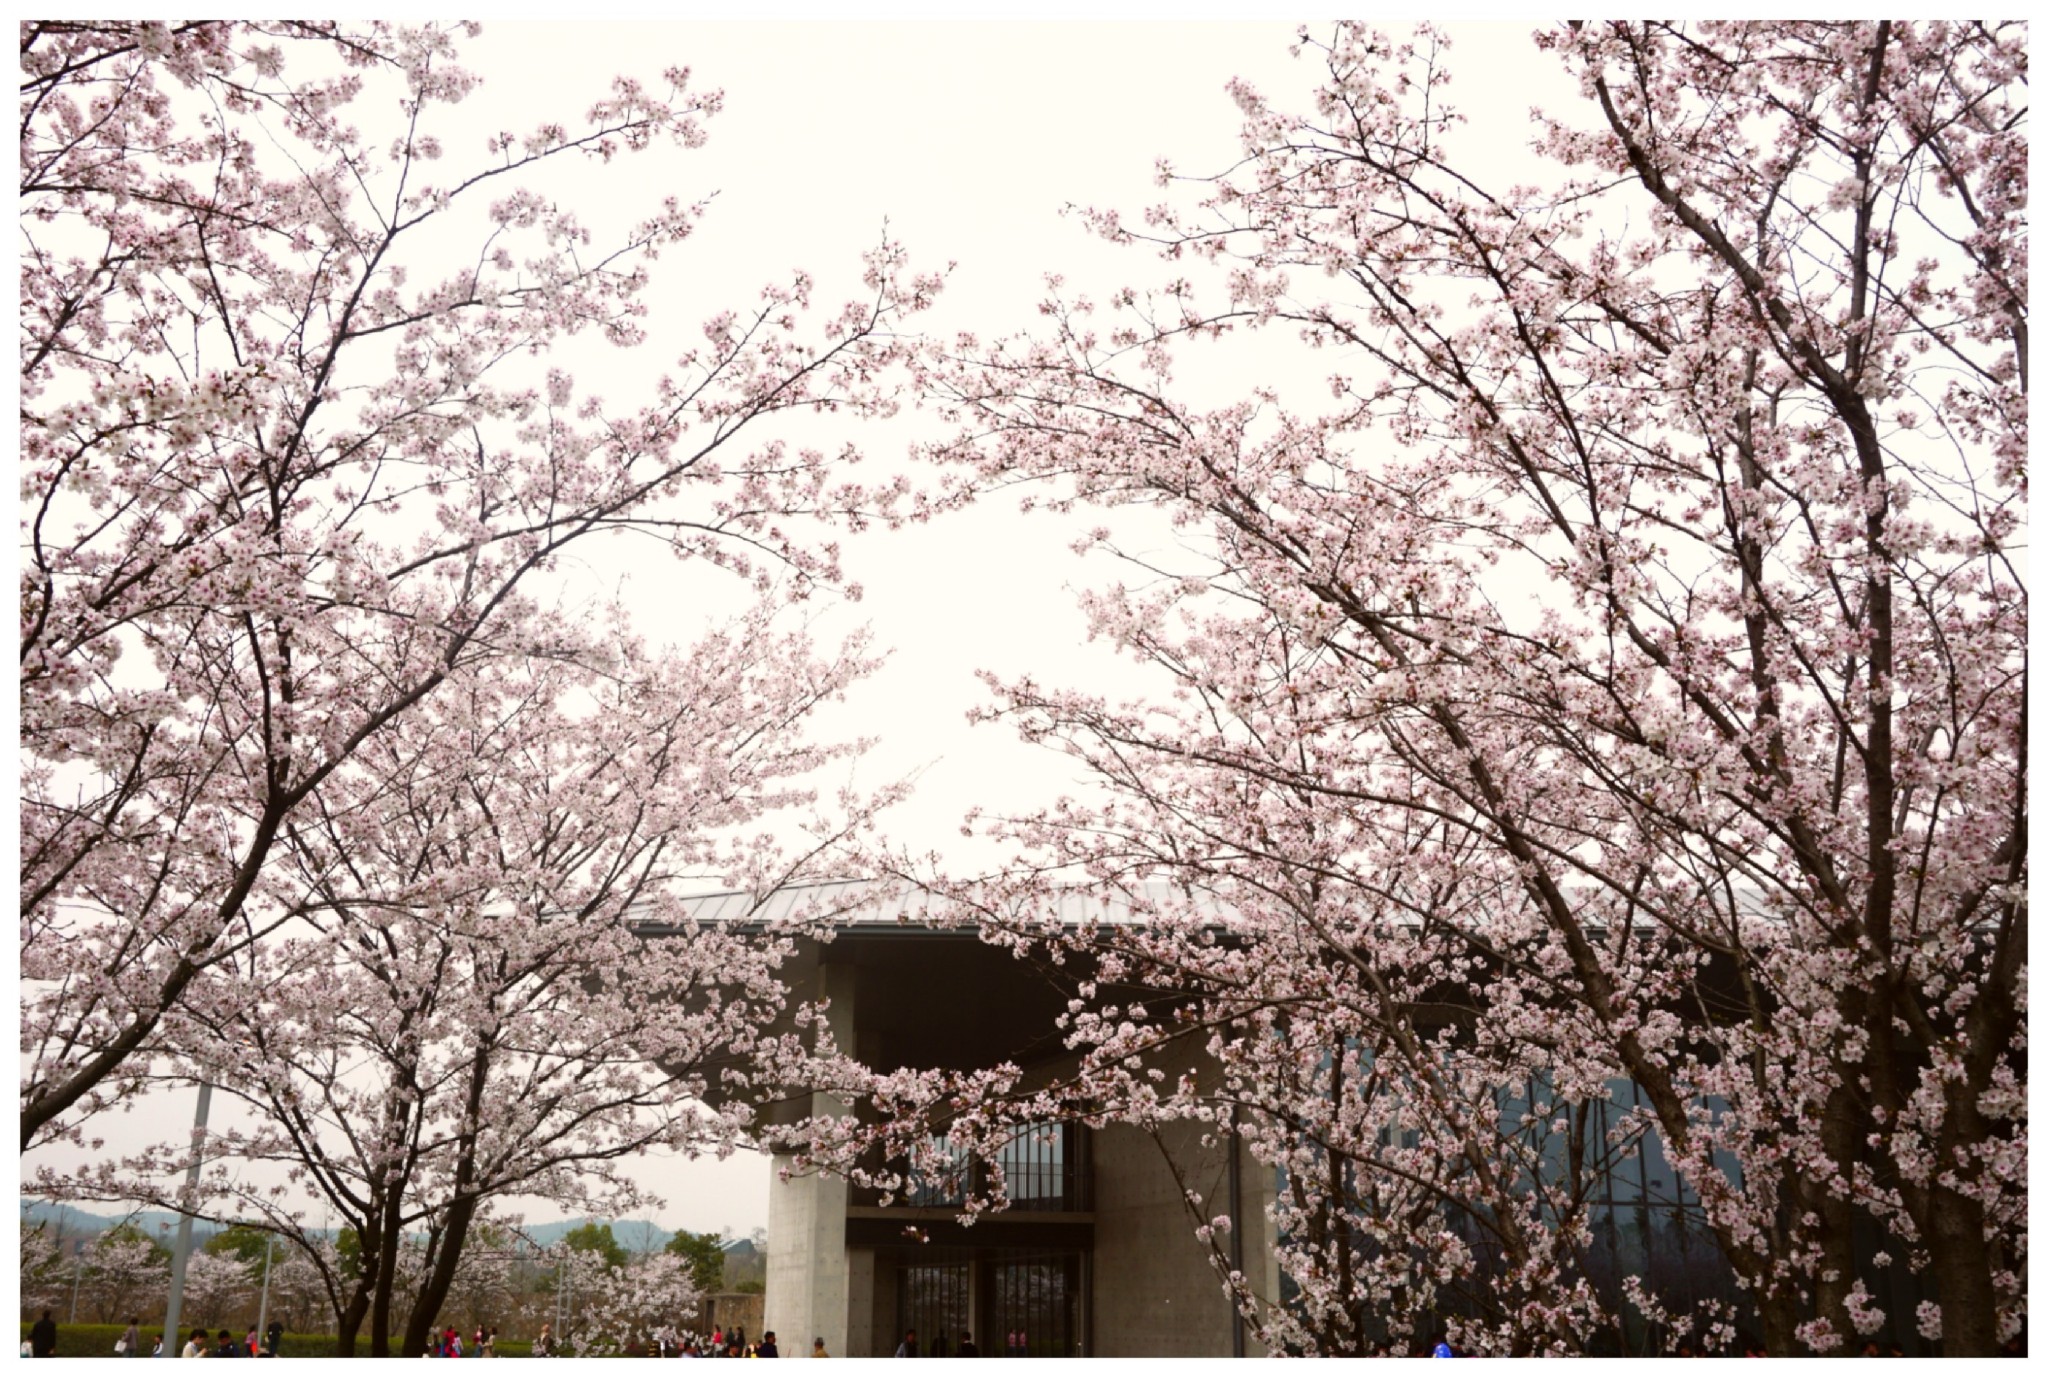 良渚的四季也有它独特的美,尤其是阳春三月,大屋顶前的樱花大道,加上